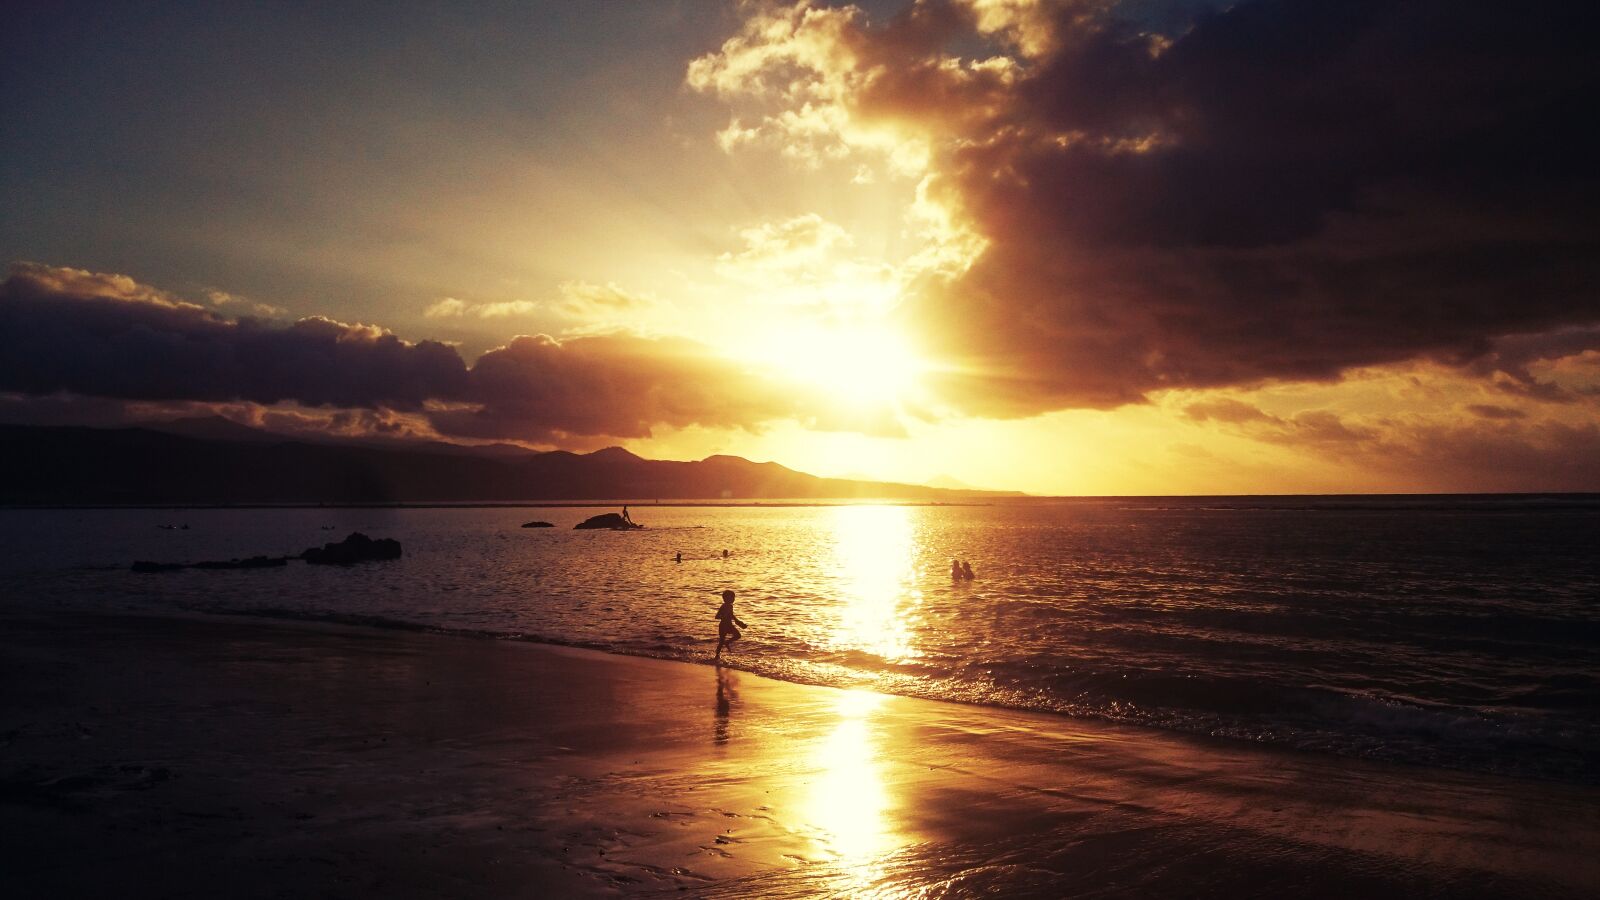 Sony Xperia Z3 sample photo. Beach, ocean, sunset photography